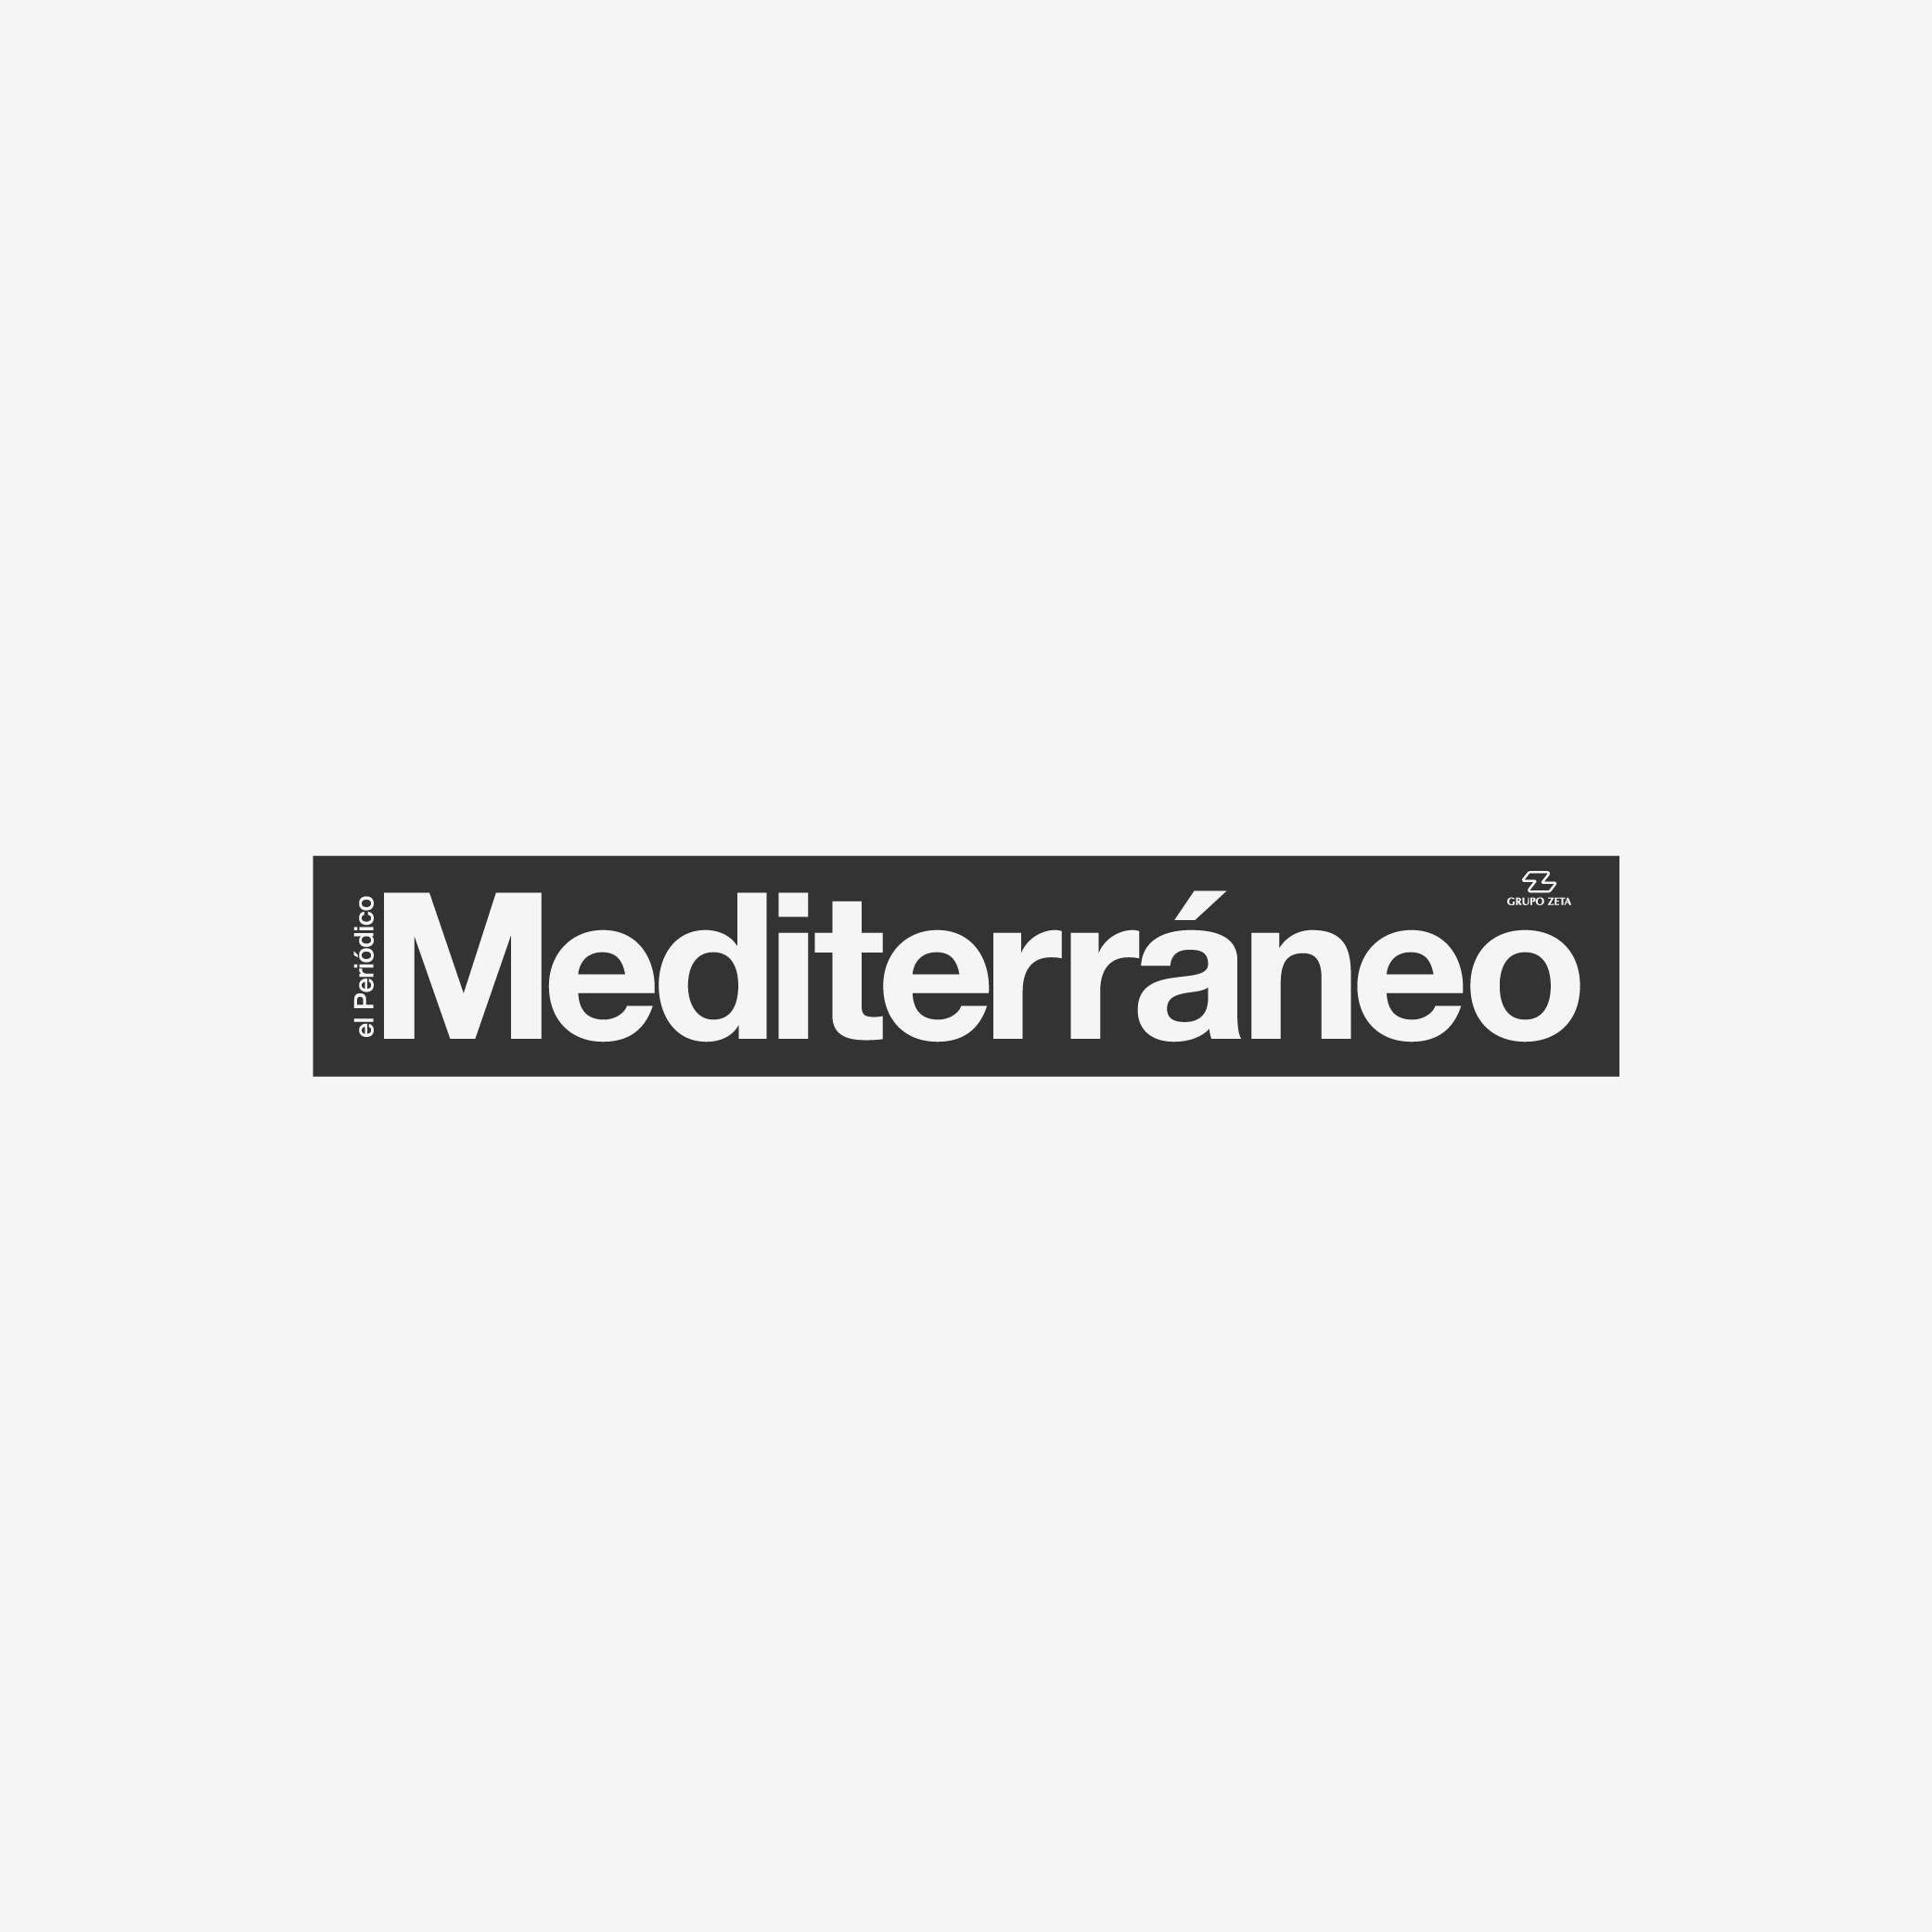 El periódico Mediterráneo